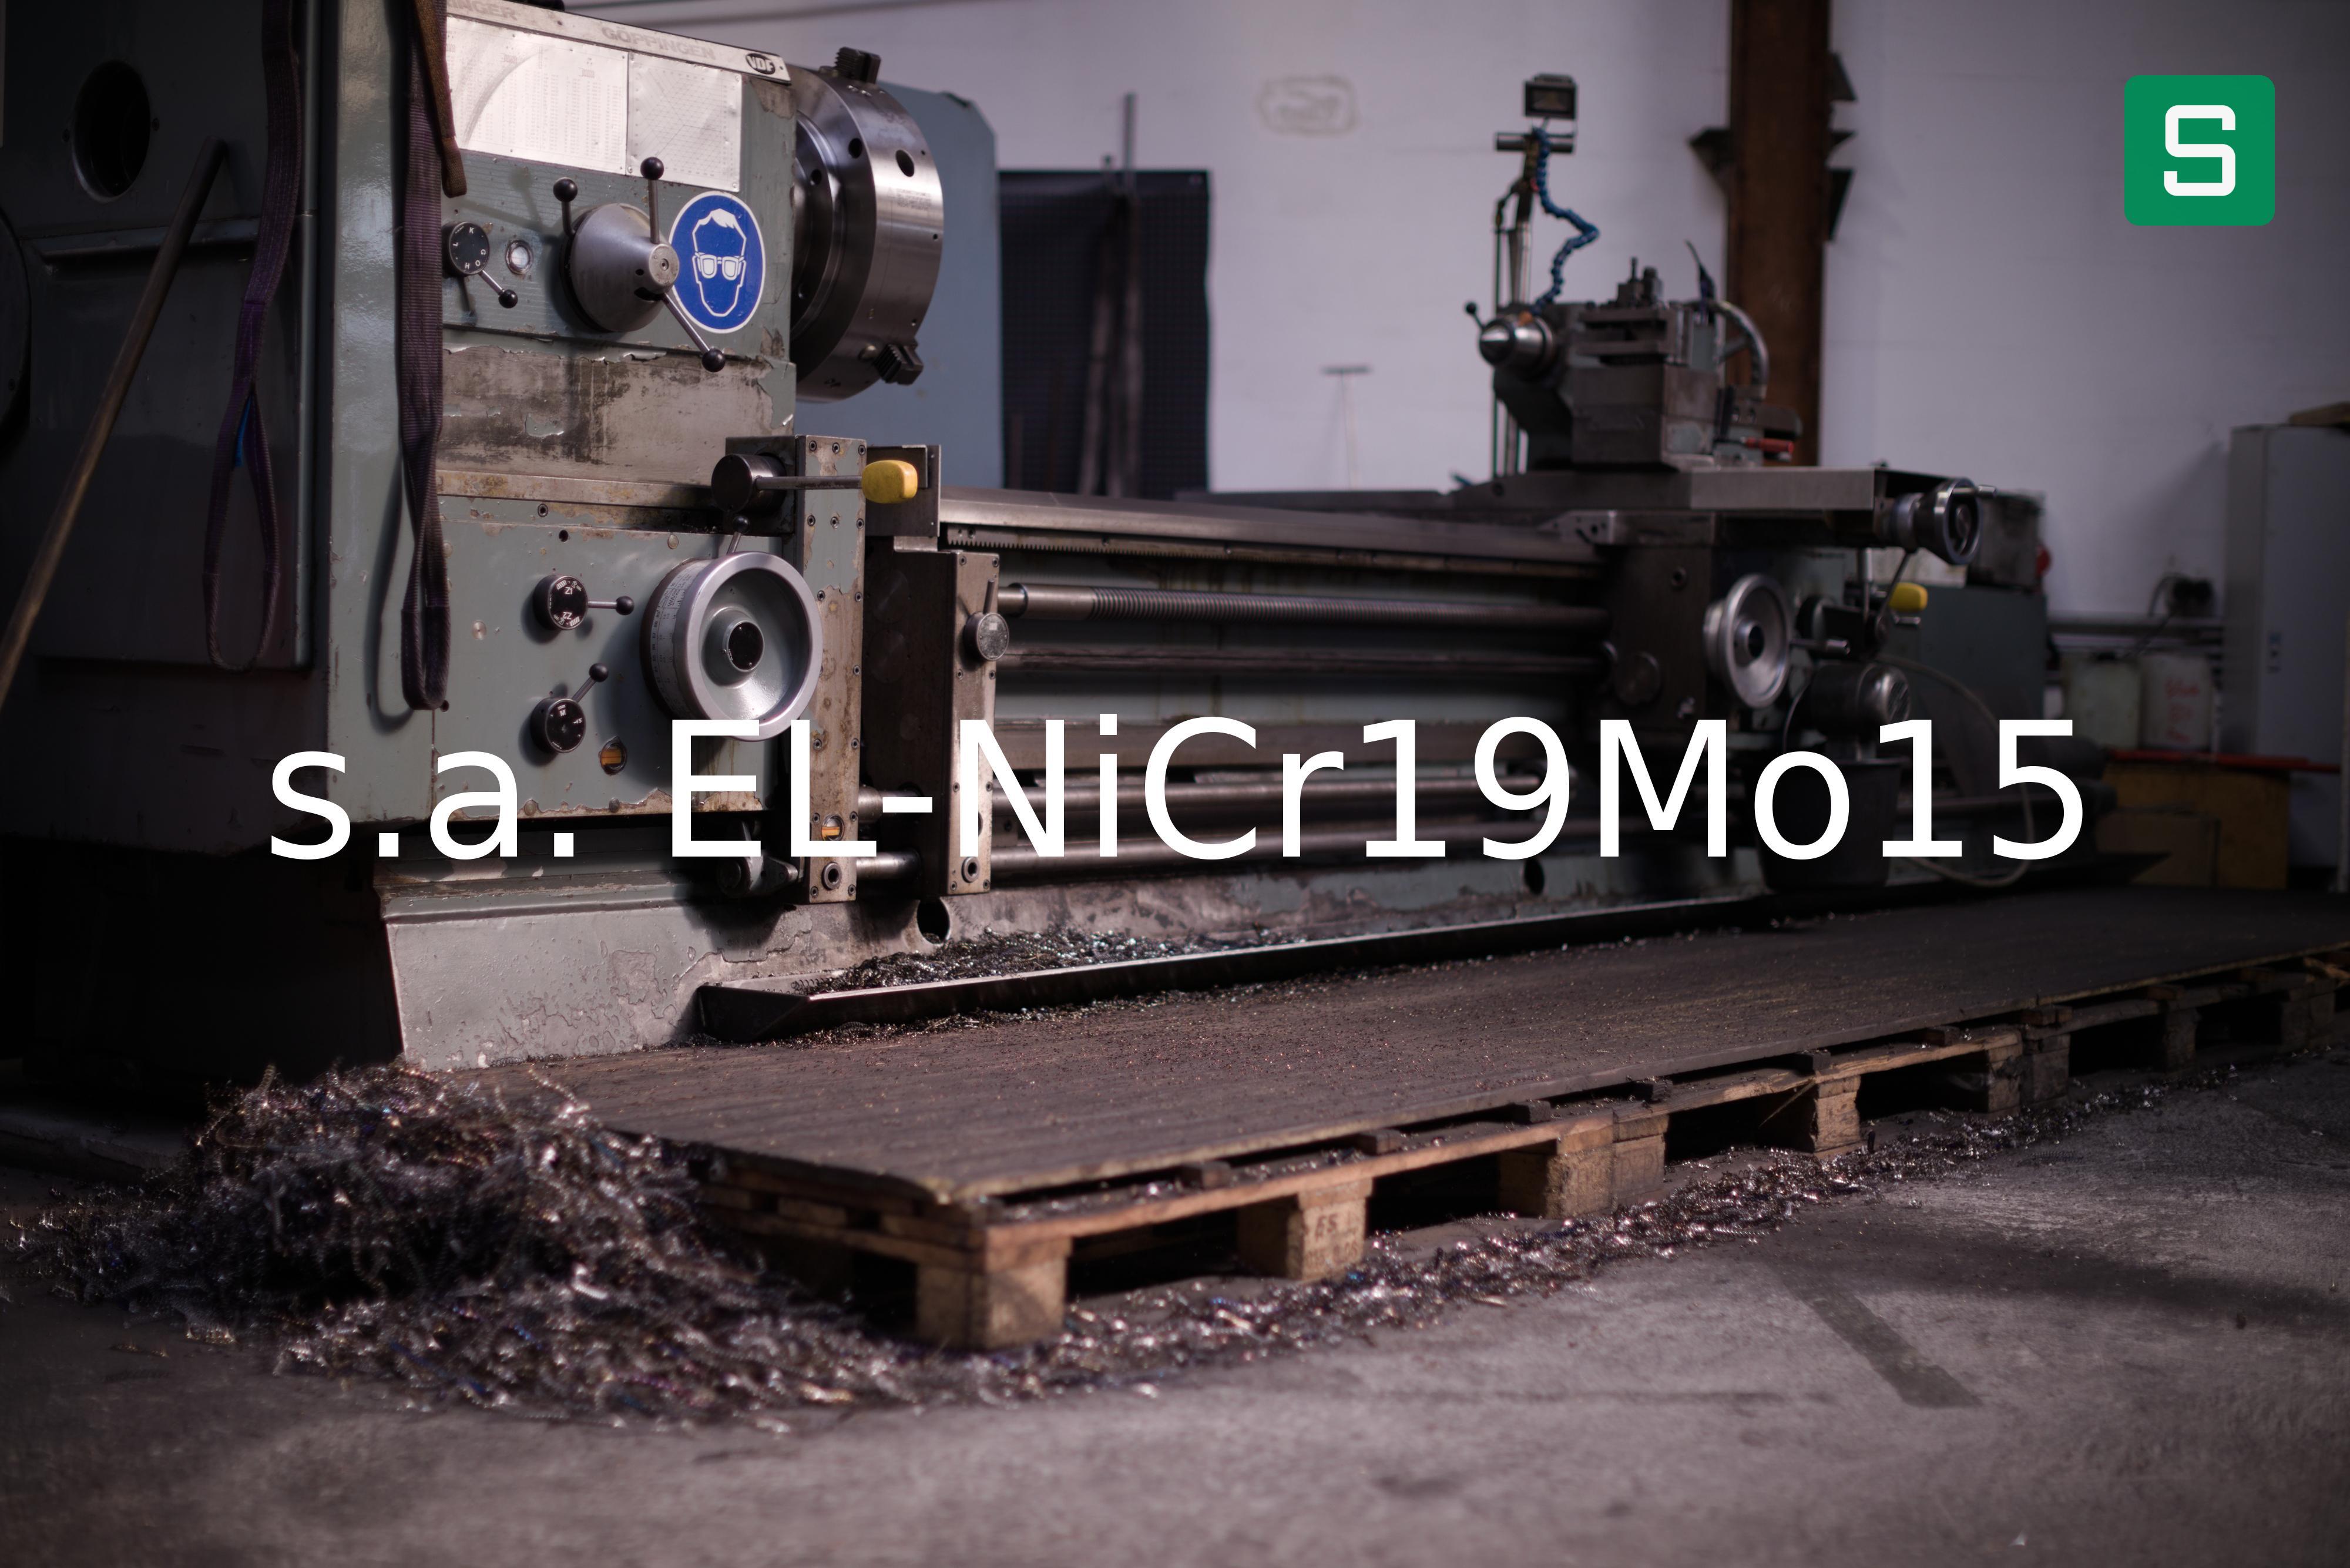 Steel Material: s.a. EL-NiCr19Mo15